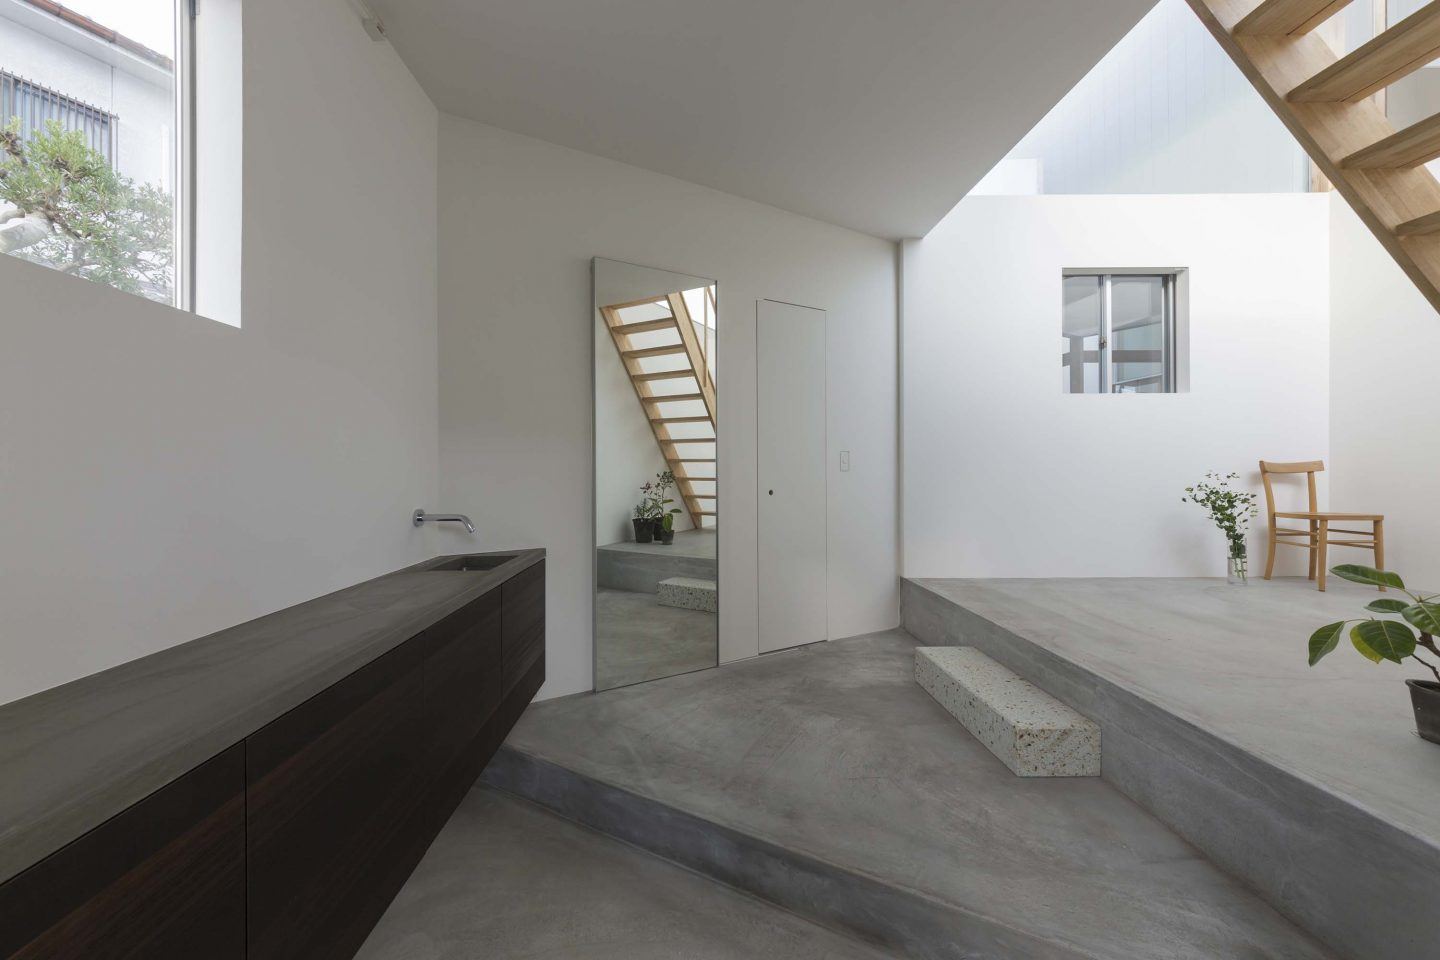 IGNANT-Architecture-Tato-Architects-House-In-Hokusetsu-3